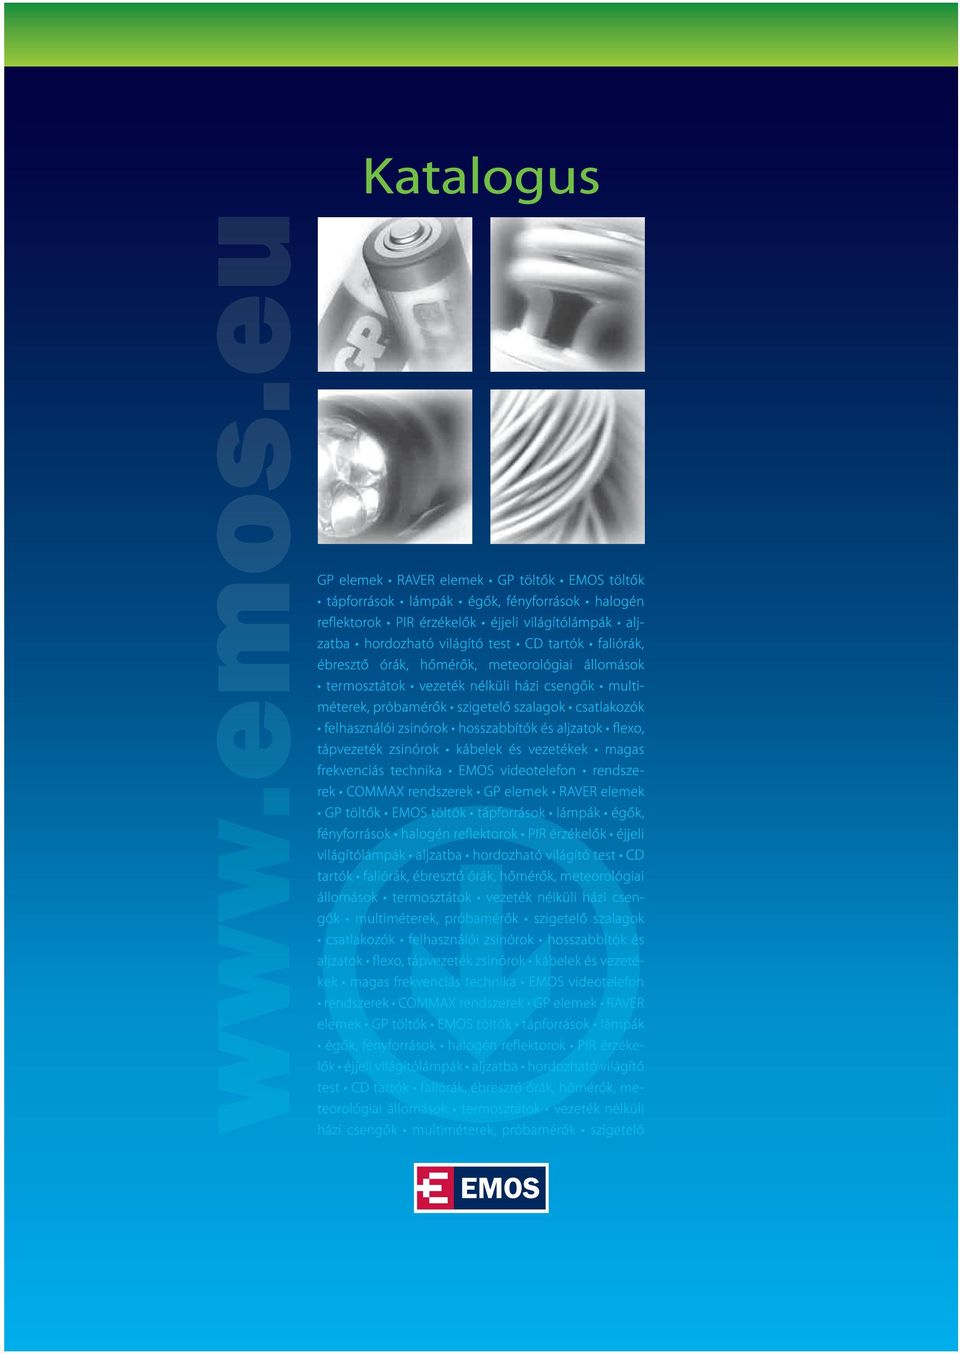 Katalogus. test CD tartók faliórák, ébresztő órák, hőmérők, meteorológiai -  PDF Free Download